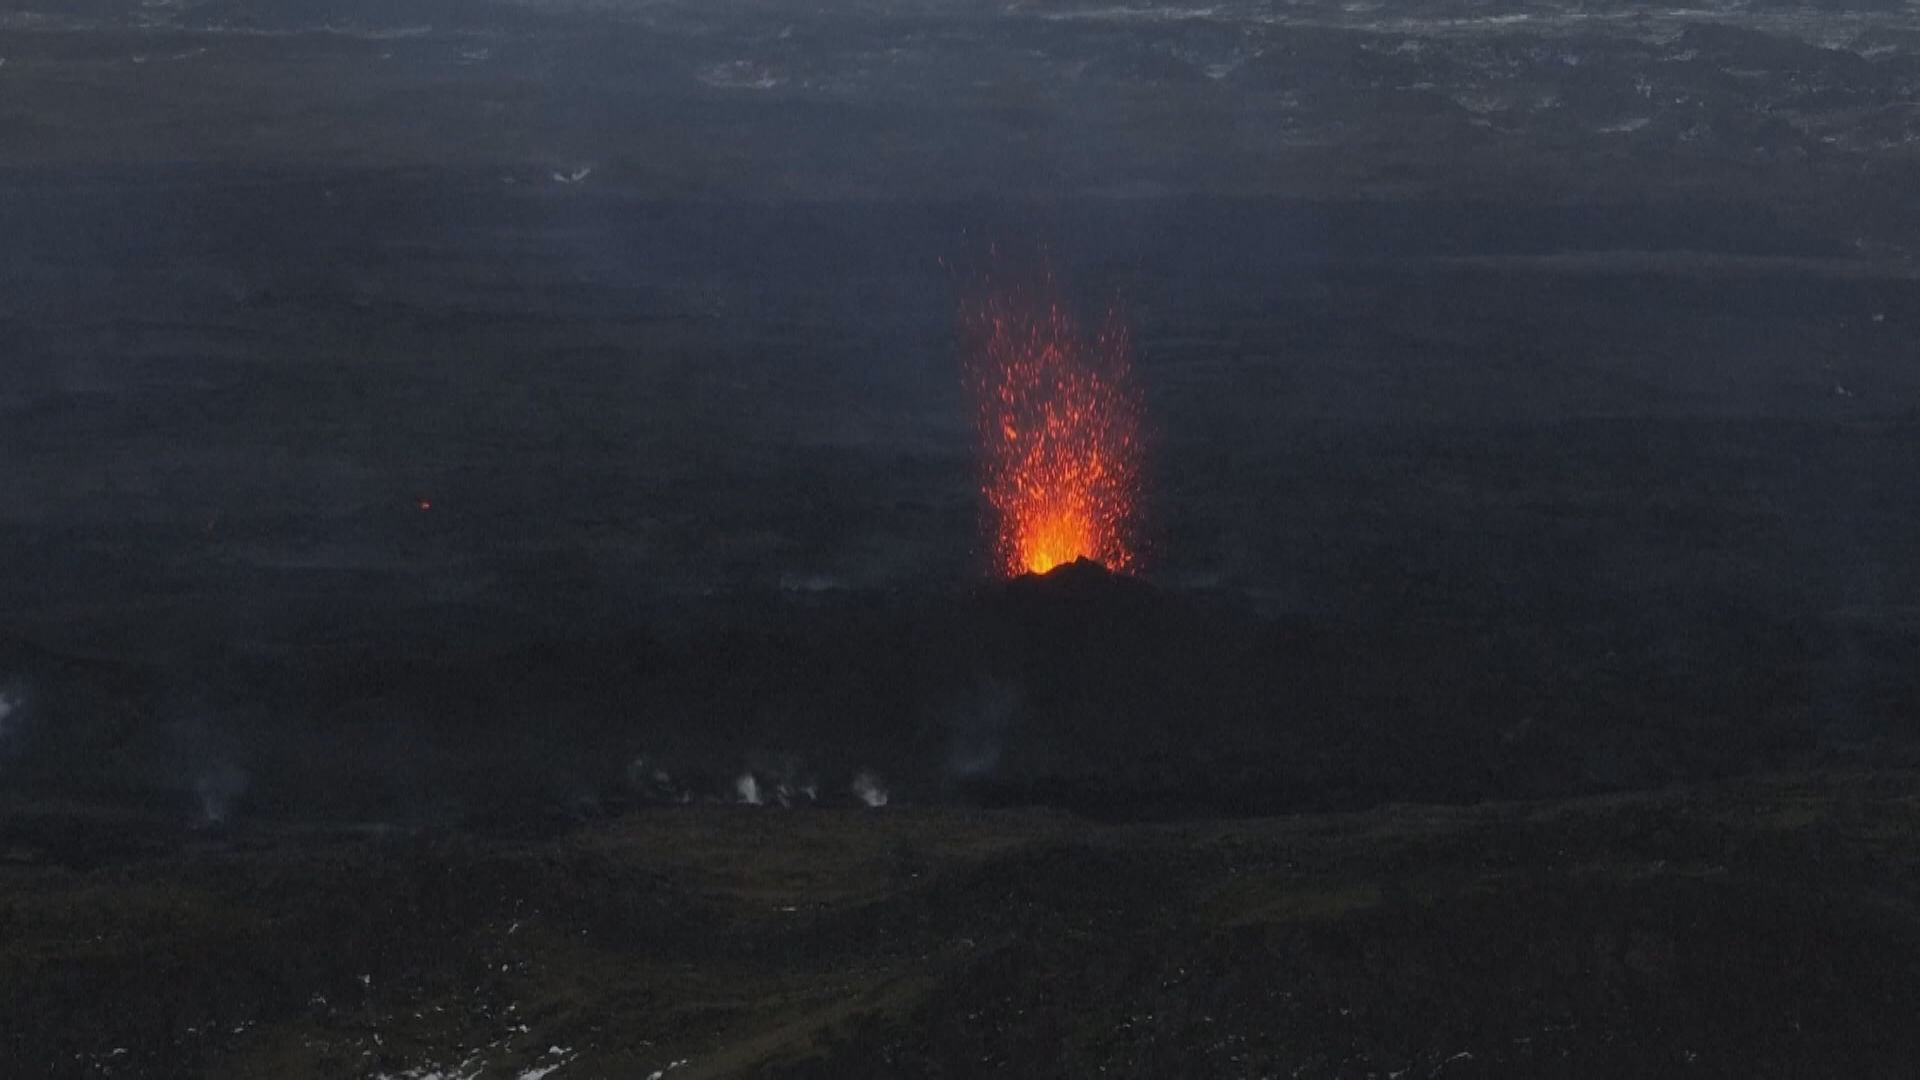 冰島指海爾加費德火山已無可見活動 下調警戒級別